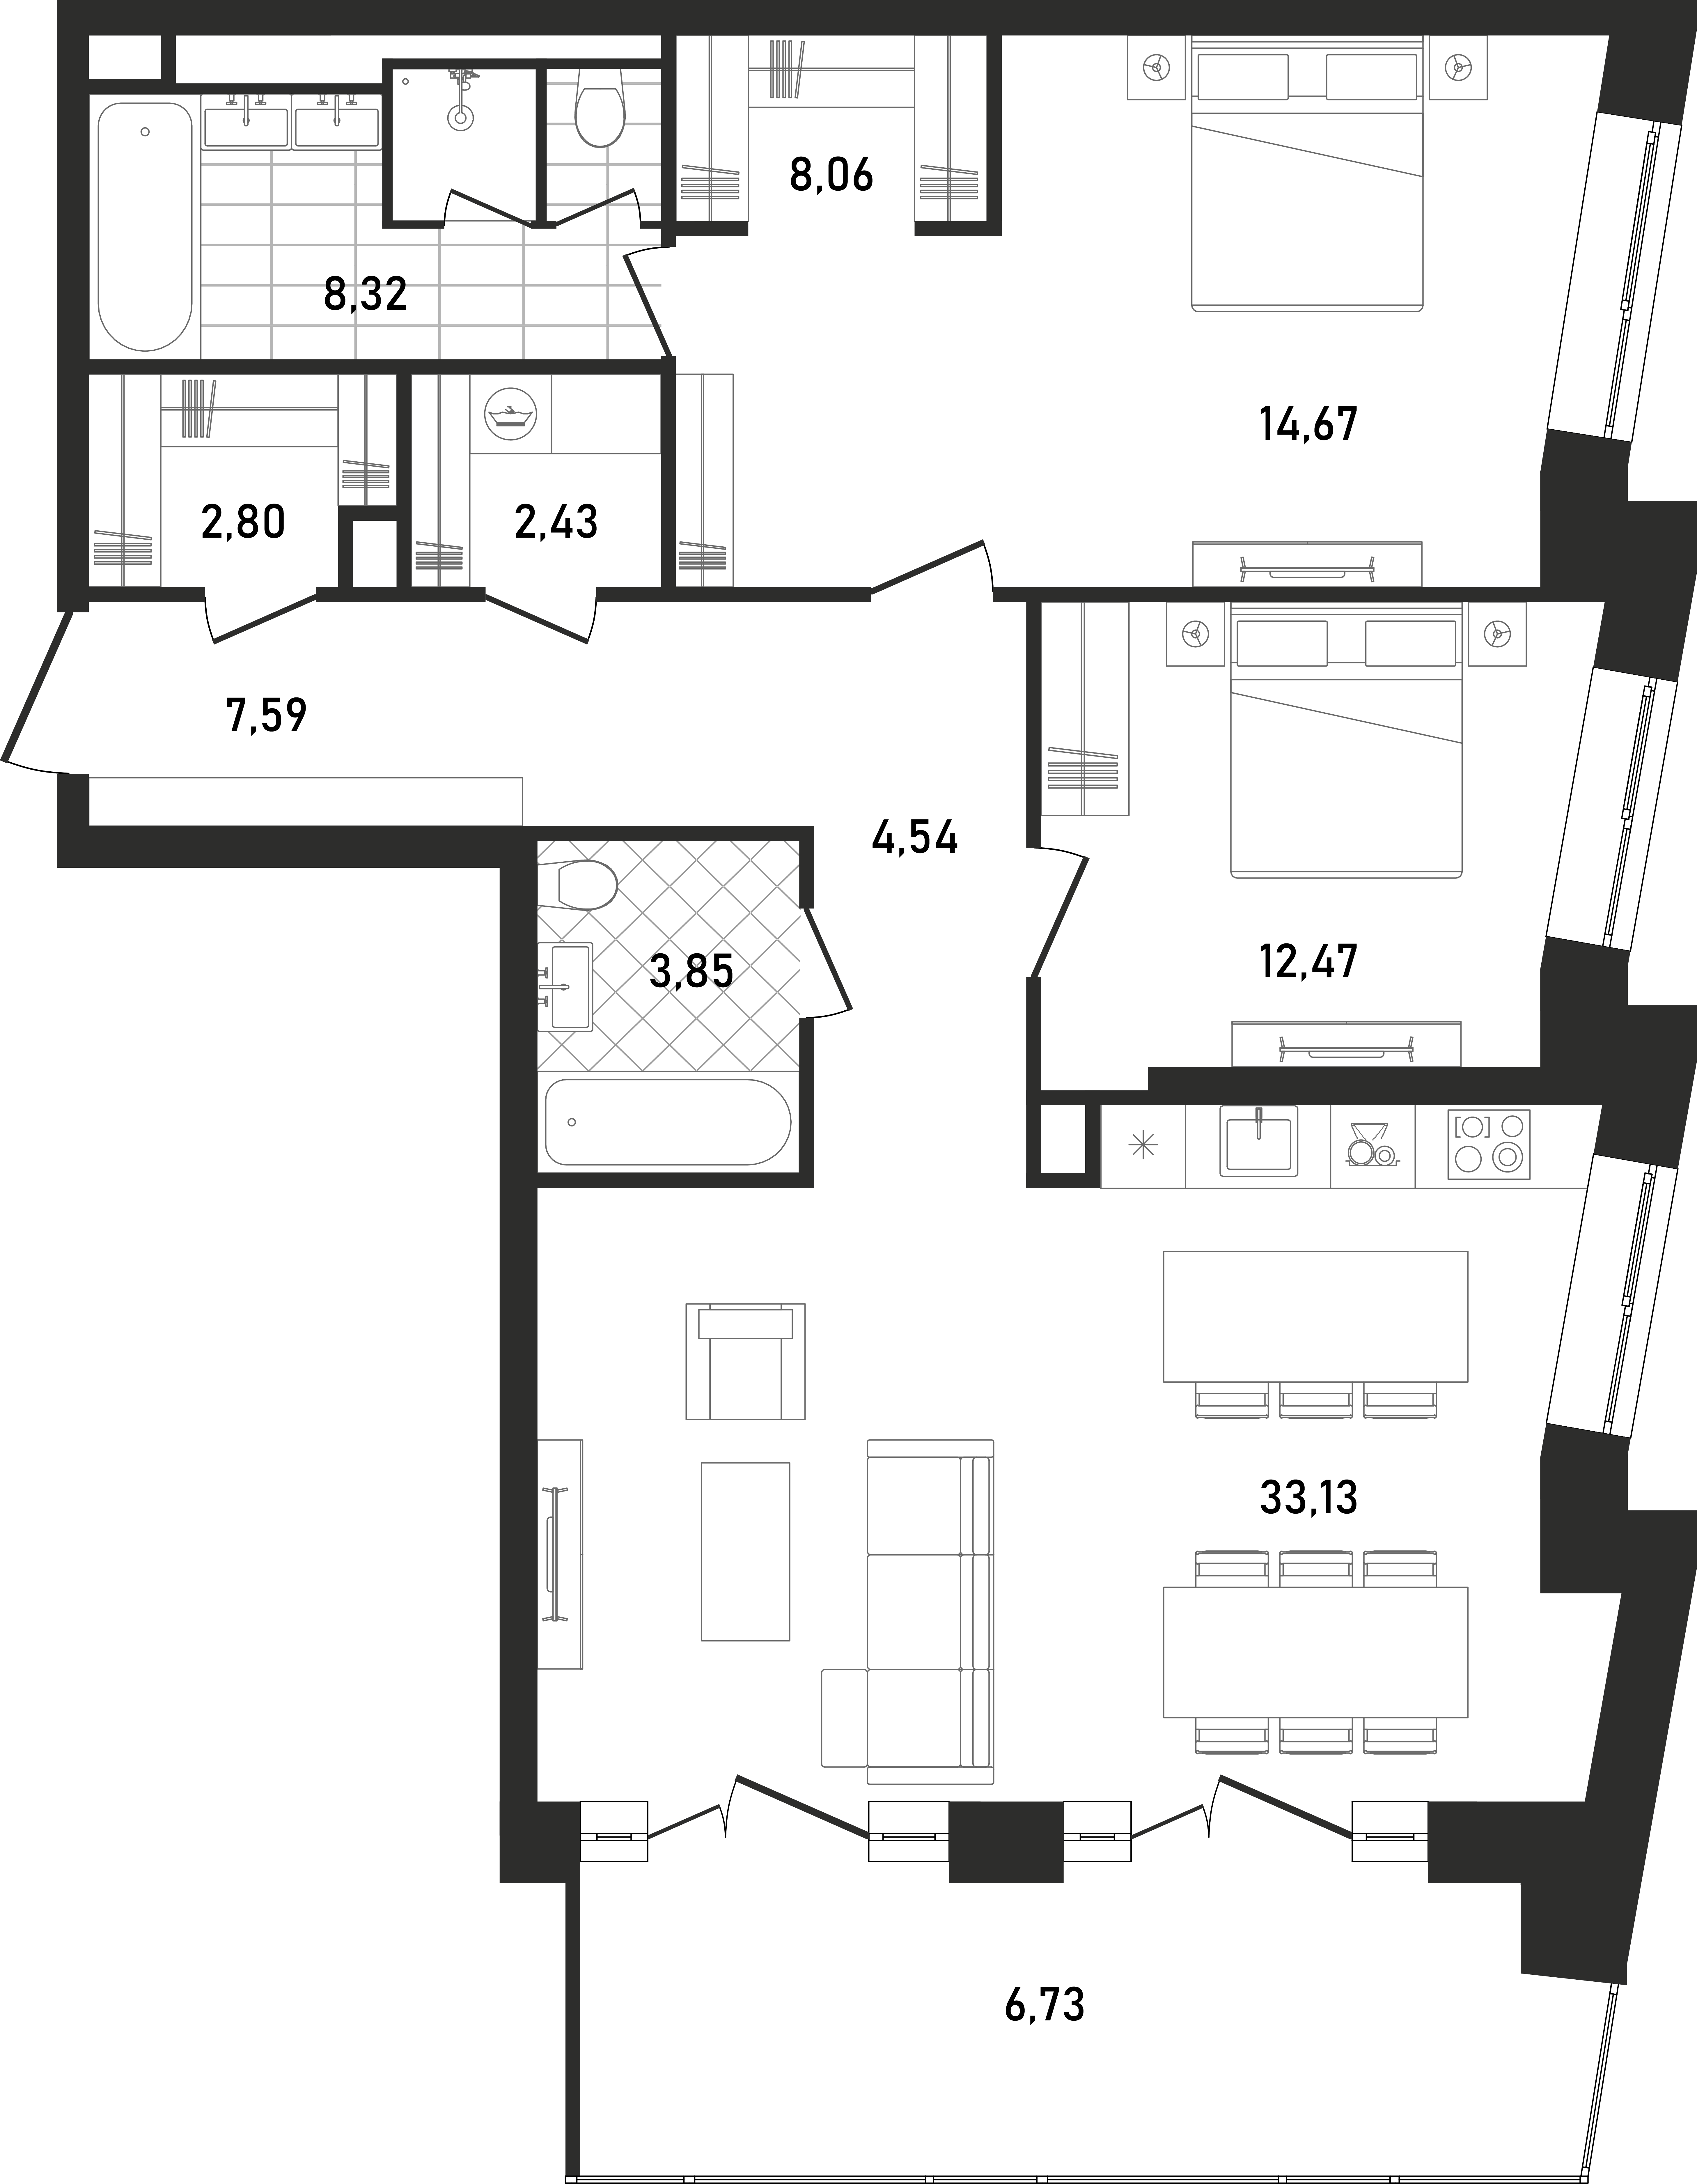 Планировка Квартира с 2 спальнями 104.49 м2 в ЖК Republic